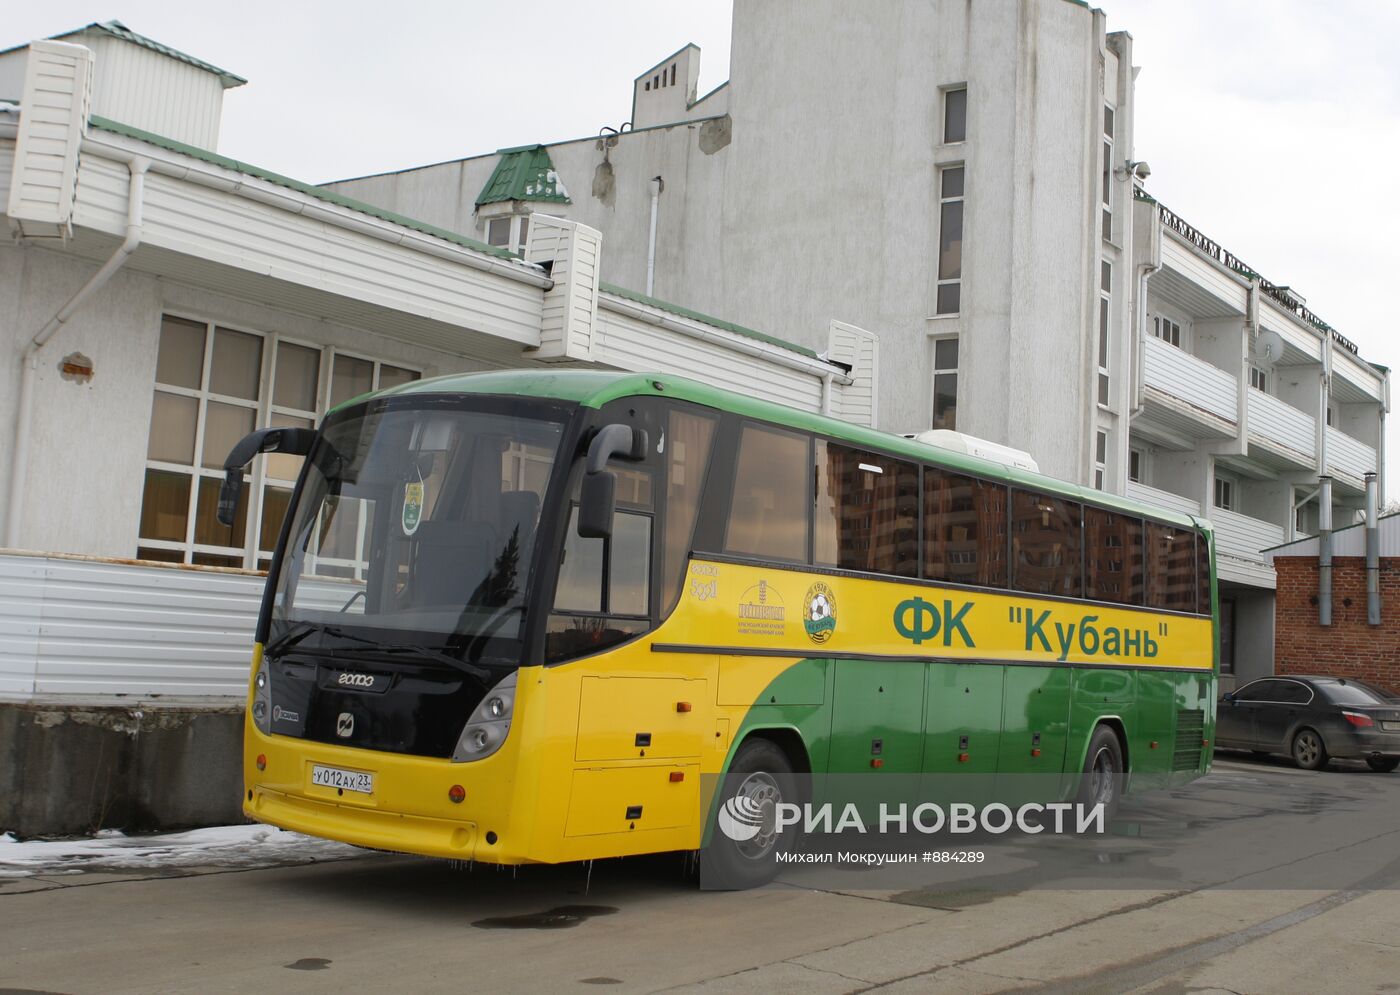 Автобус футбольного клуба "Кубань"